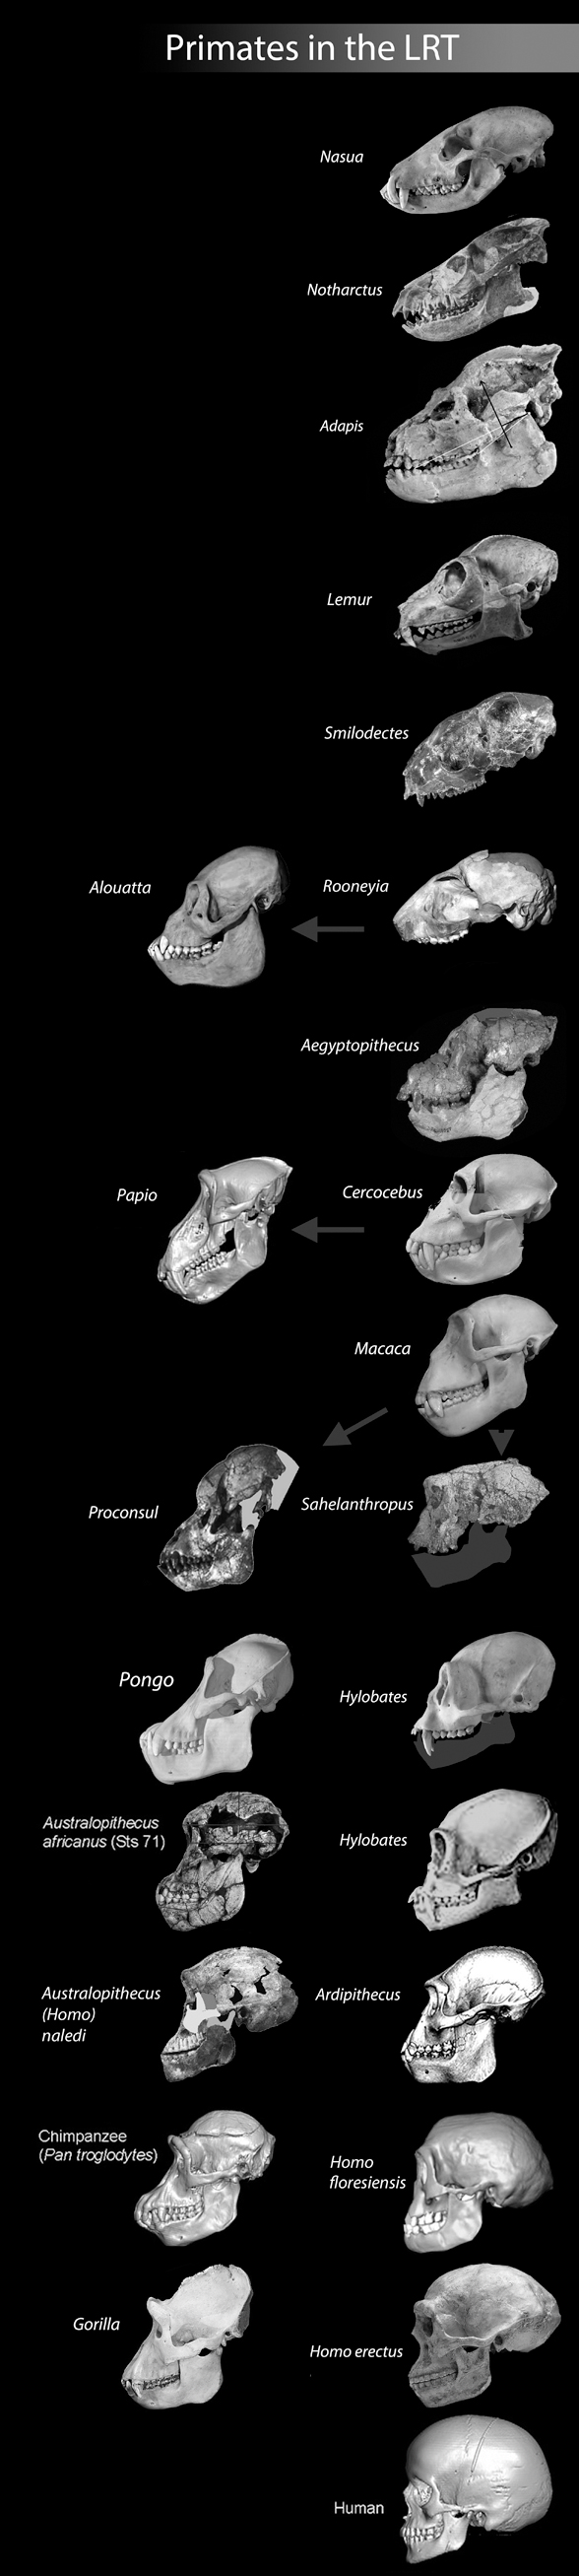 Hominoid skulls in phylogenetic ordeer